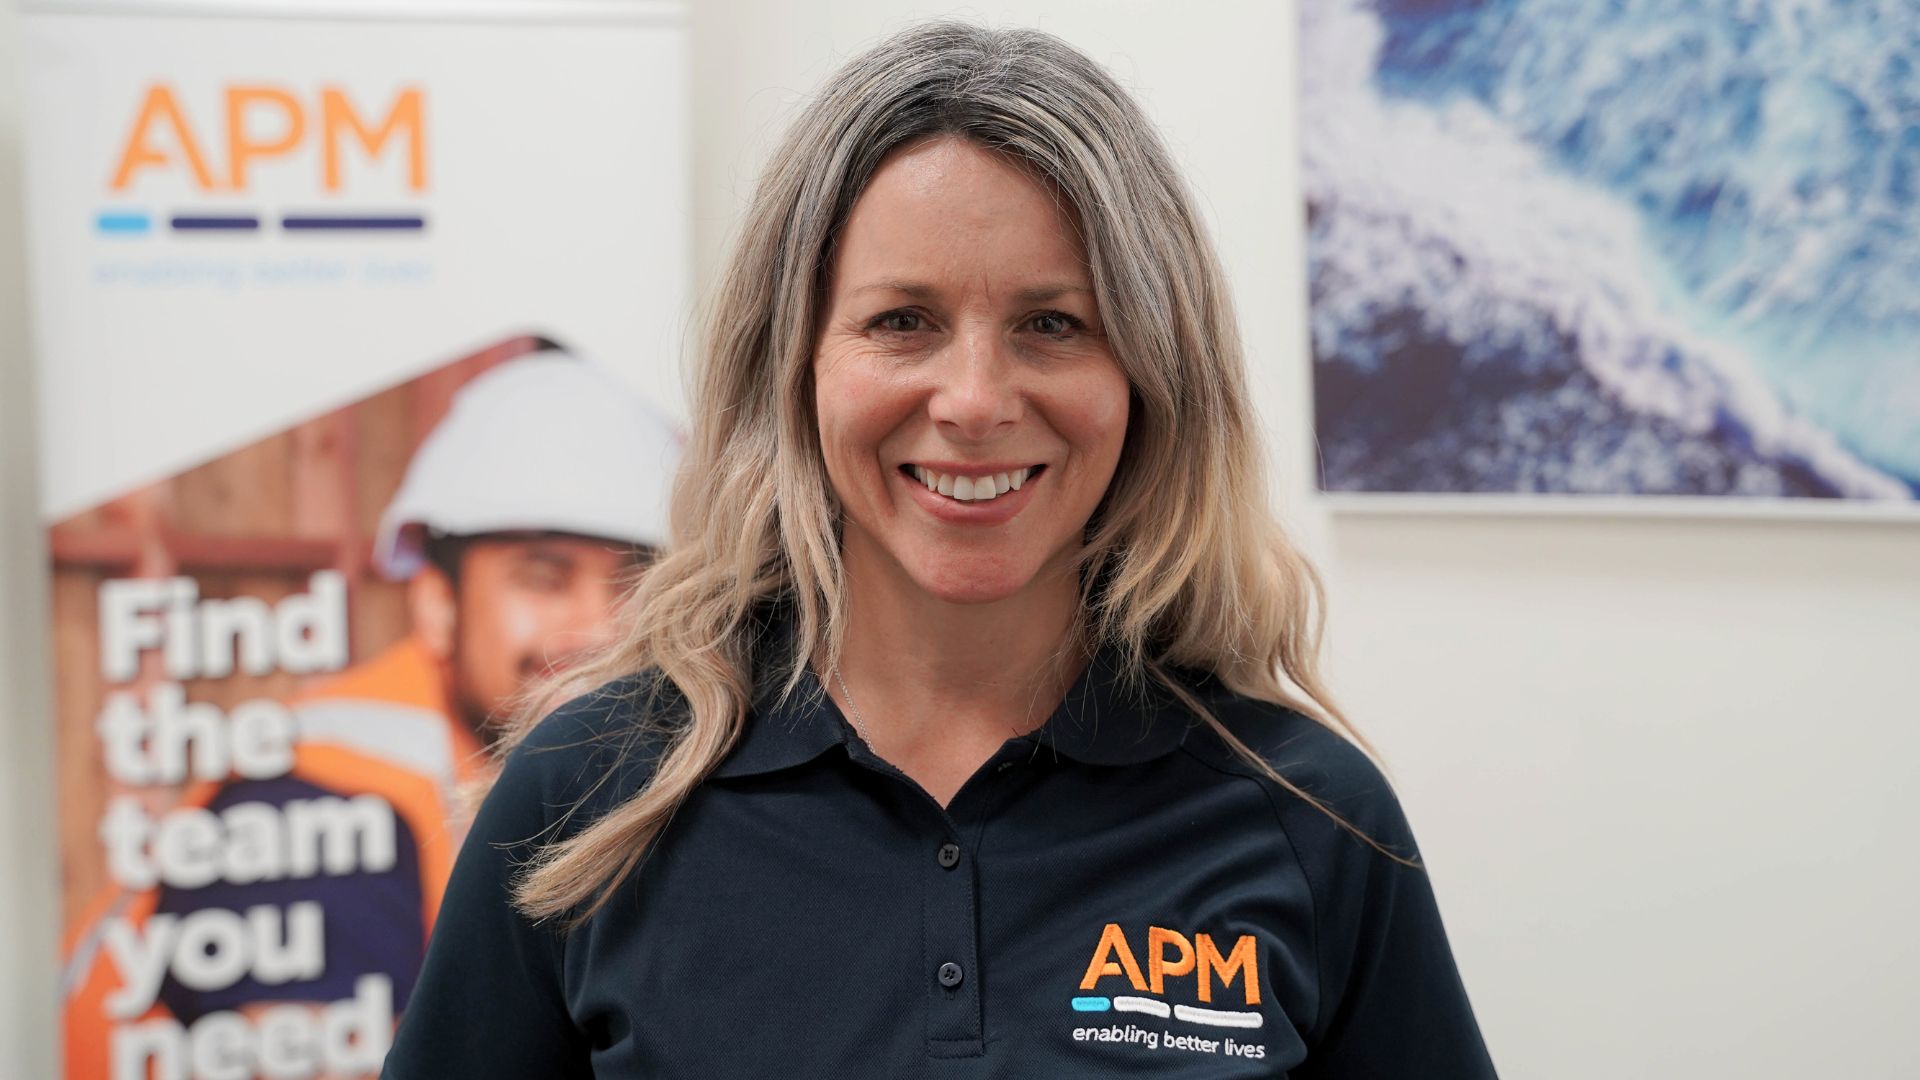 APM team member smiling